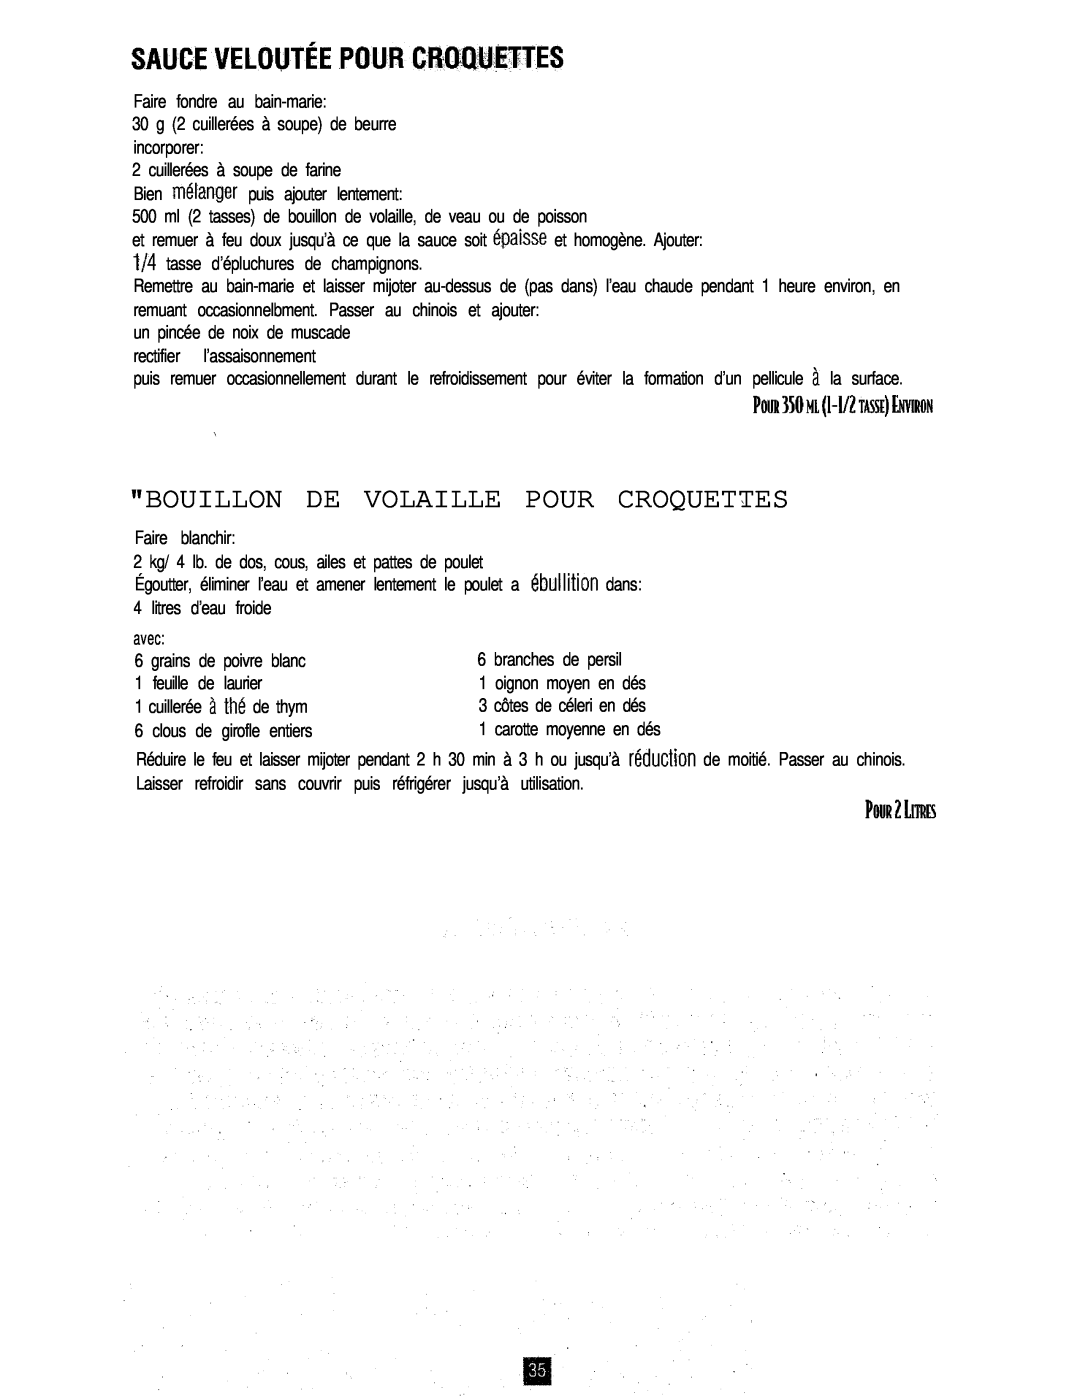 Oster 3246 manual Sauceveloutéepourcroquettes, Bouillon De Volaille Pour Croquettes, branches de persil 